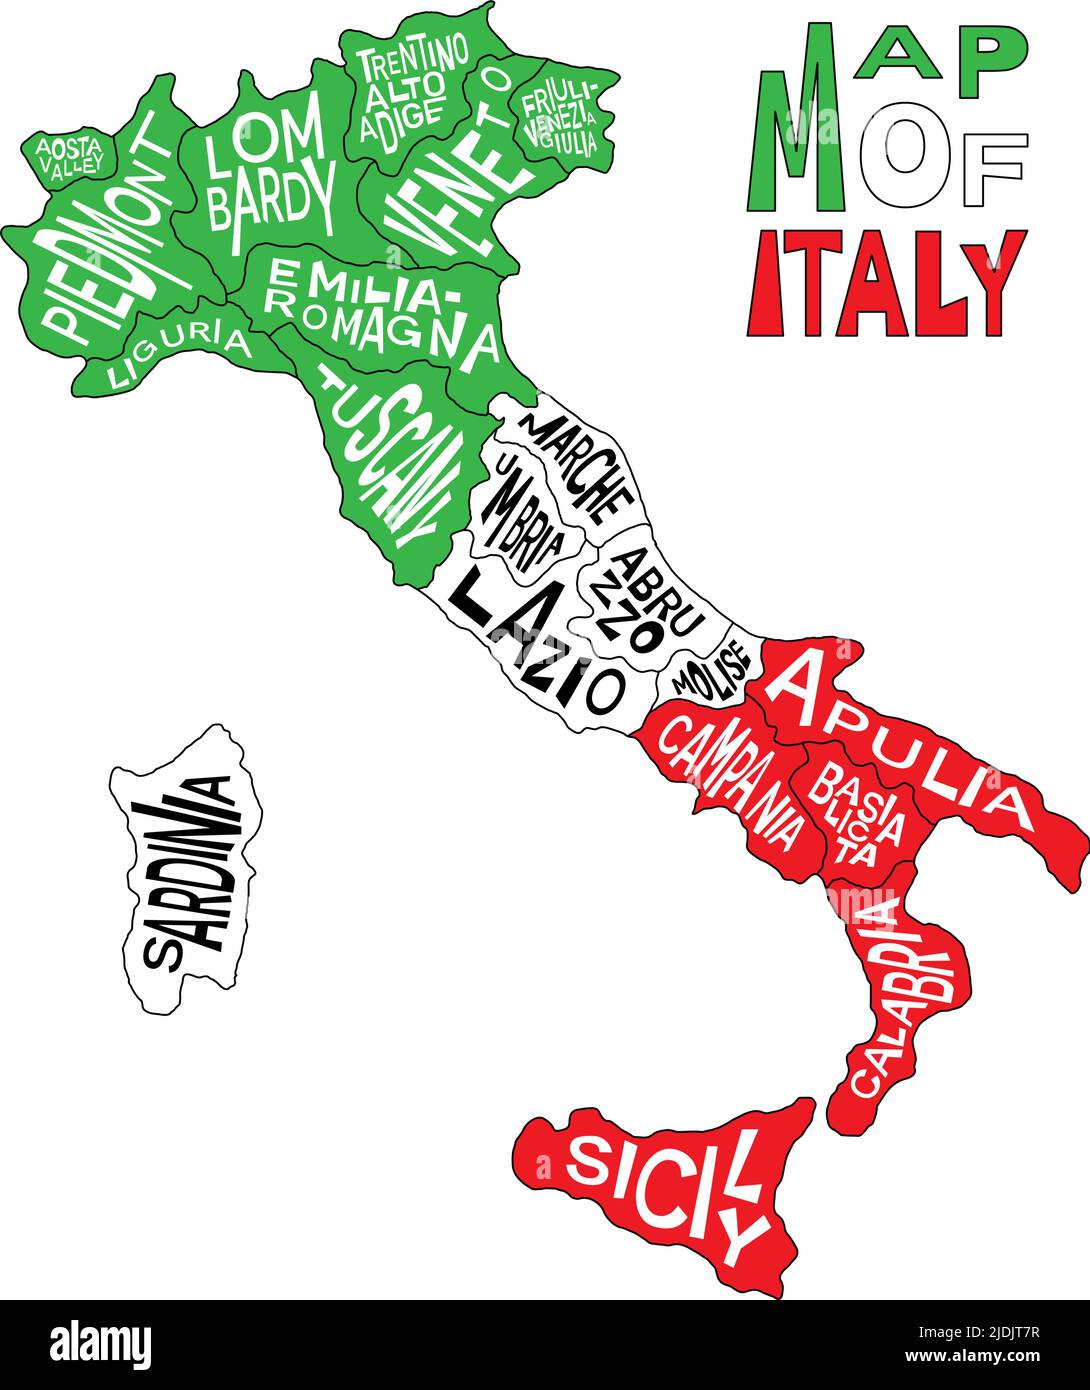 Mapa italiano con nombres de provincia administrativos - Abruzos, Valle de Aosta, Apulia, Basilicata, Calabria y más. Mapa de Italia con infografía regional Ilustración del Vector